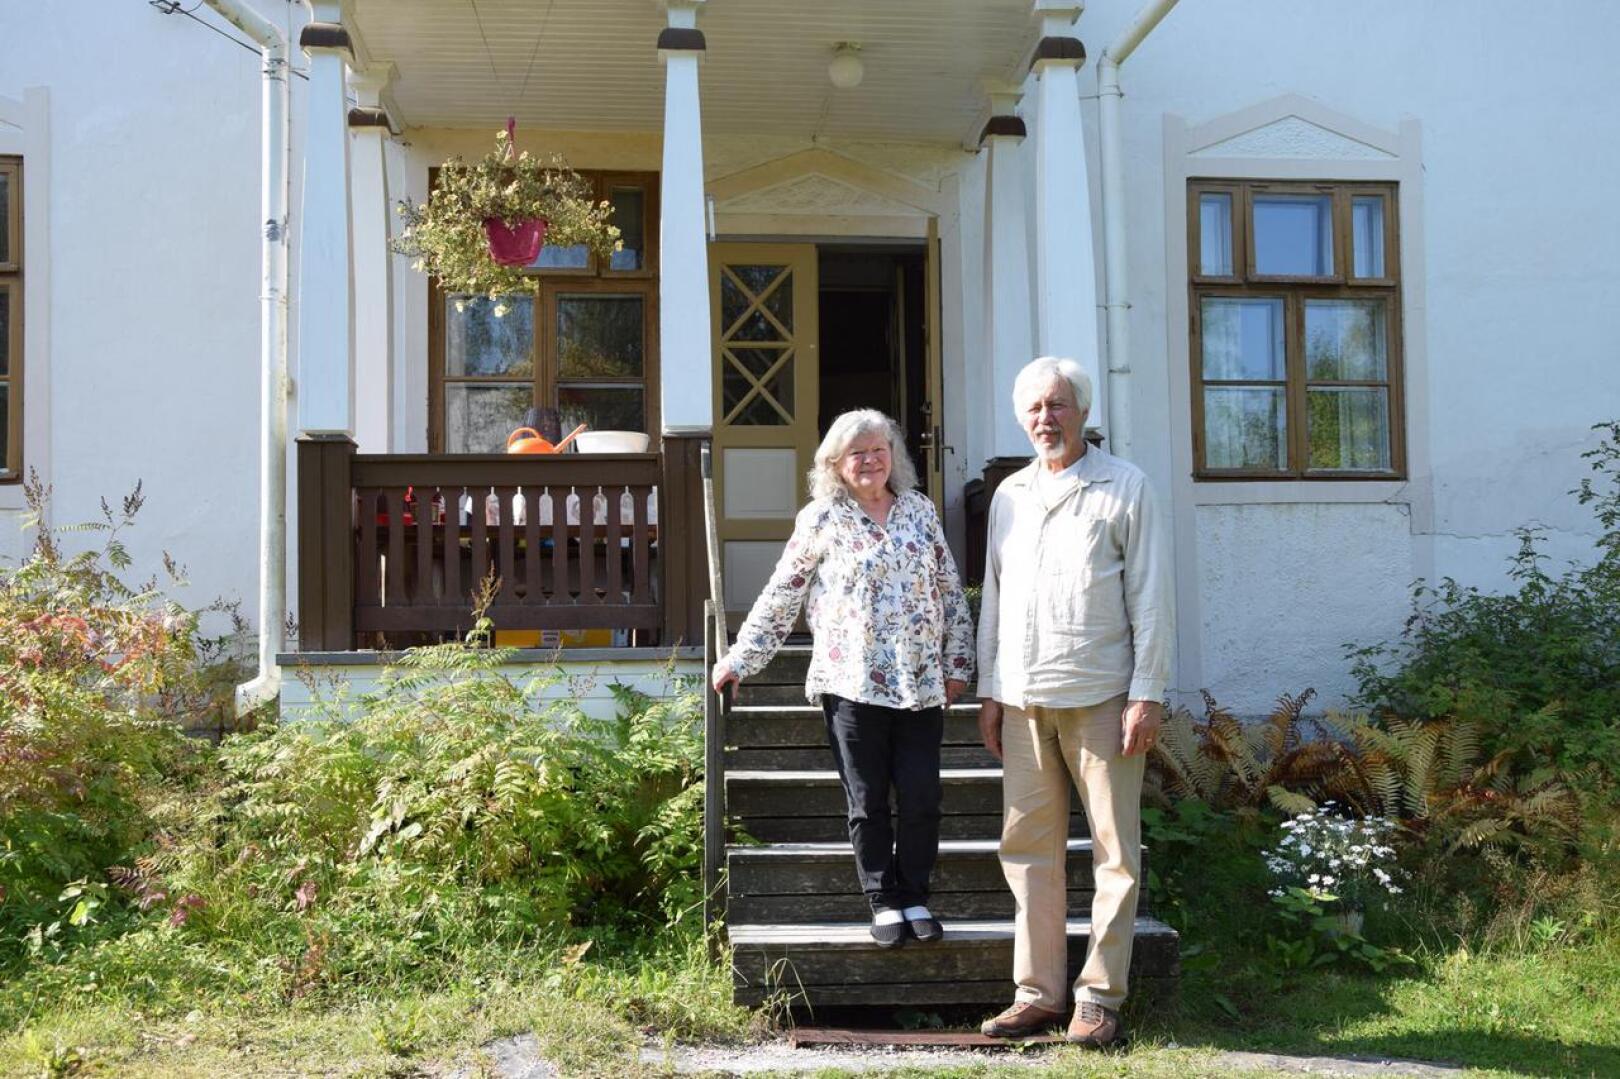 Irma ja Eero Huttunen ovat kotoisin Kiuruvedeltä, ja he ovat olleet jo koulussa samalla luokalla. Yhteiseloa pariskunnalle tuli juhannuksena täyteen viisikymmentä vuotta.